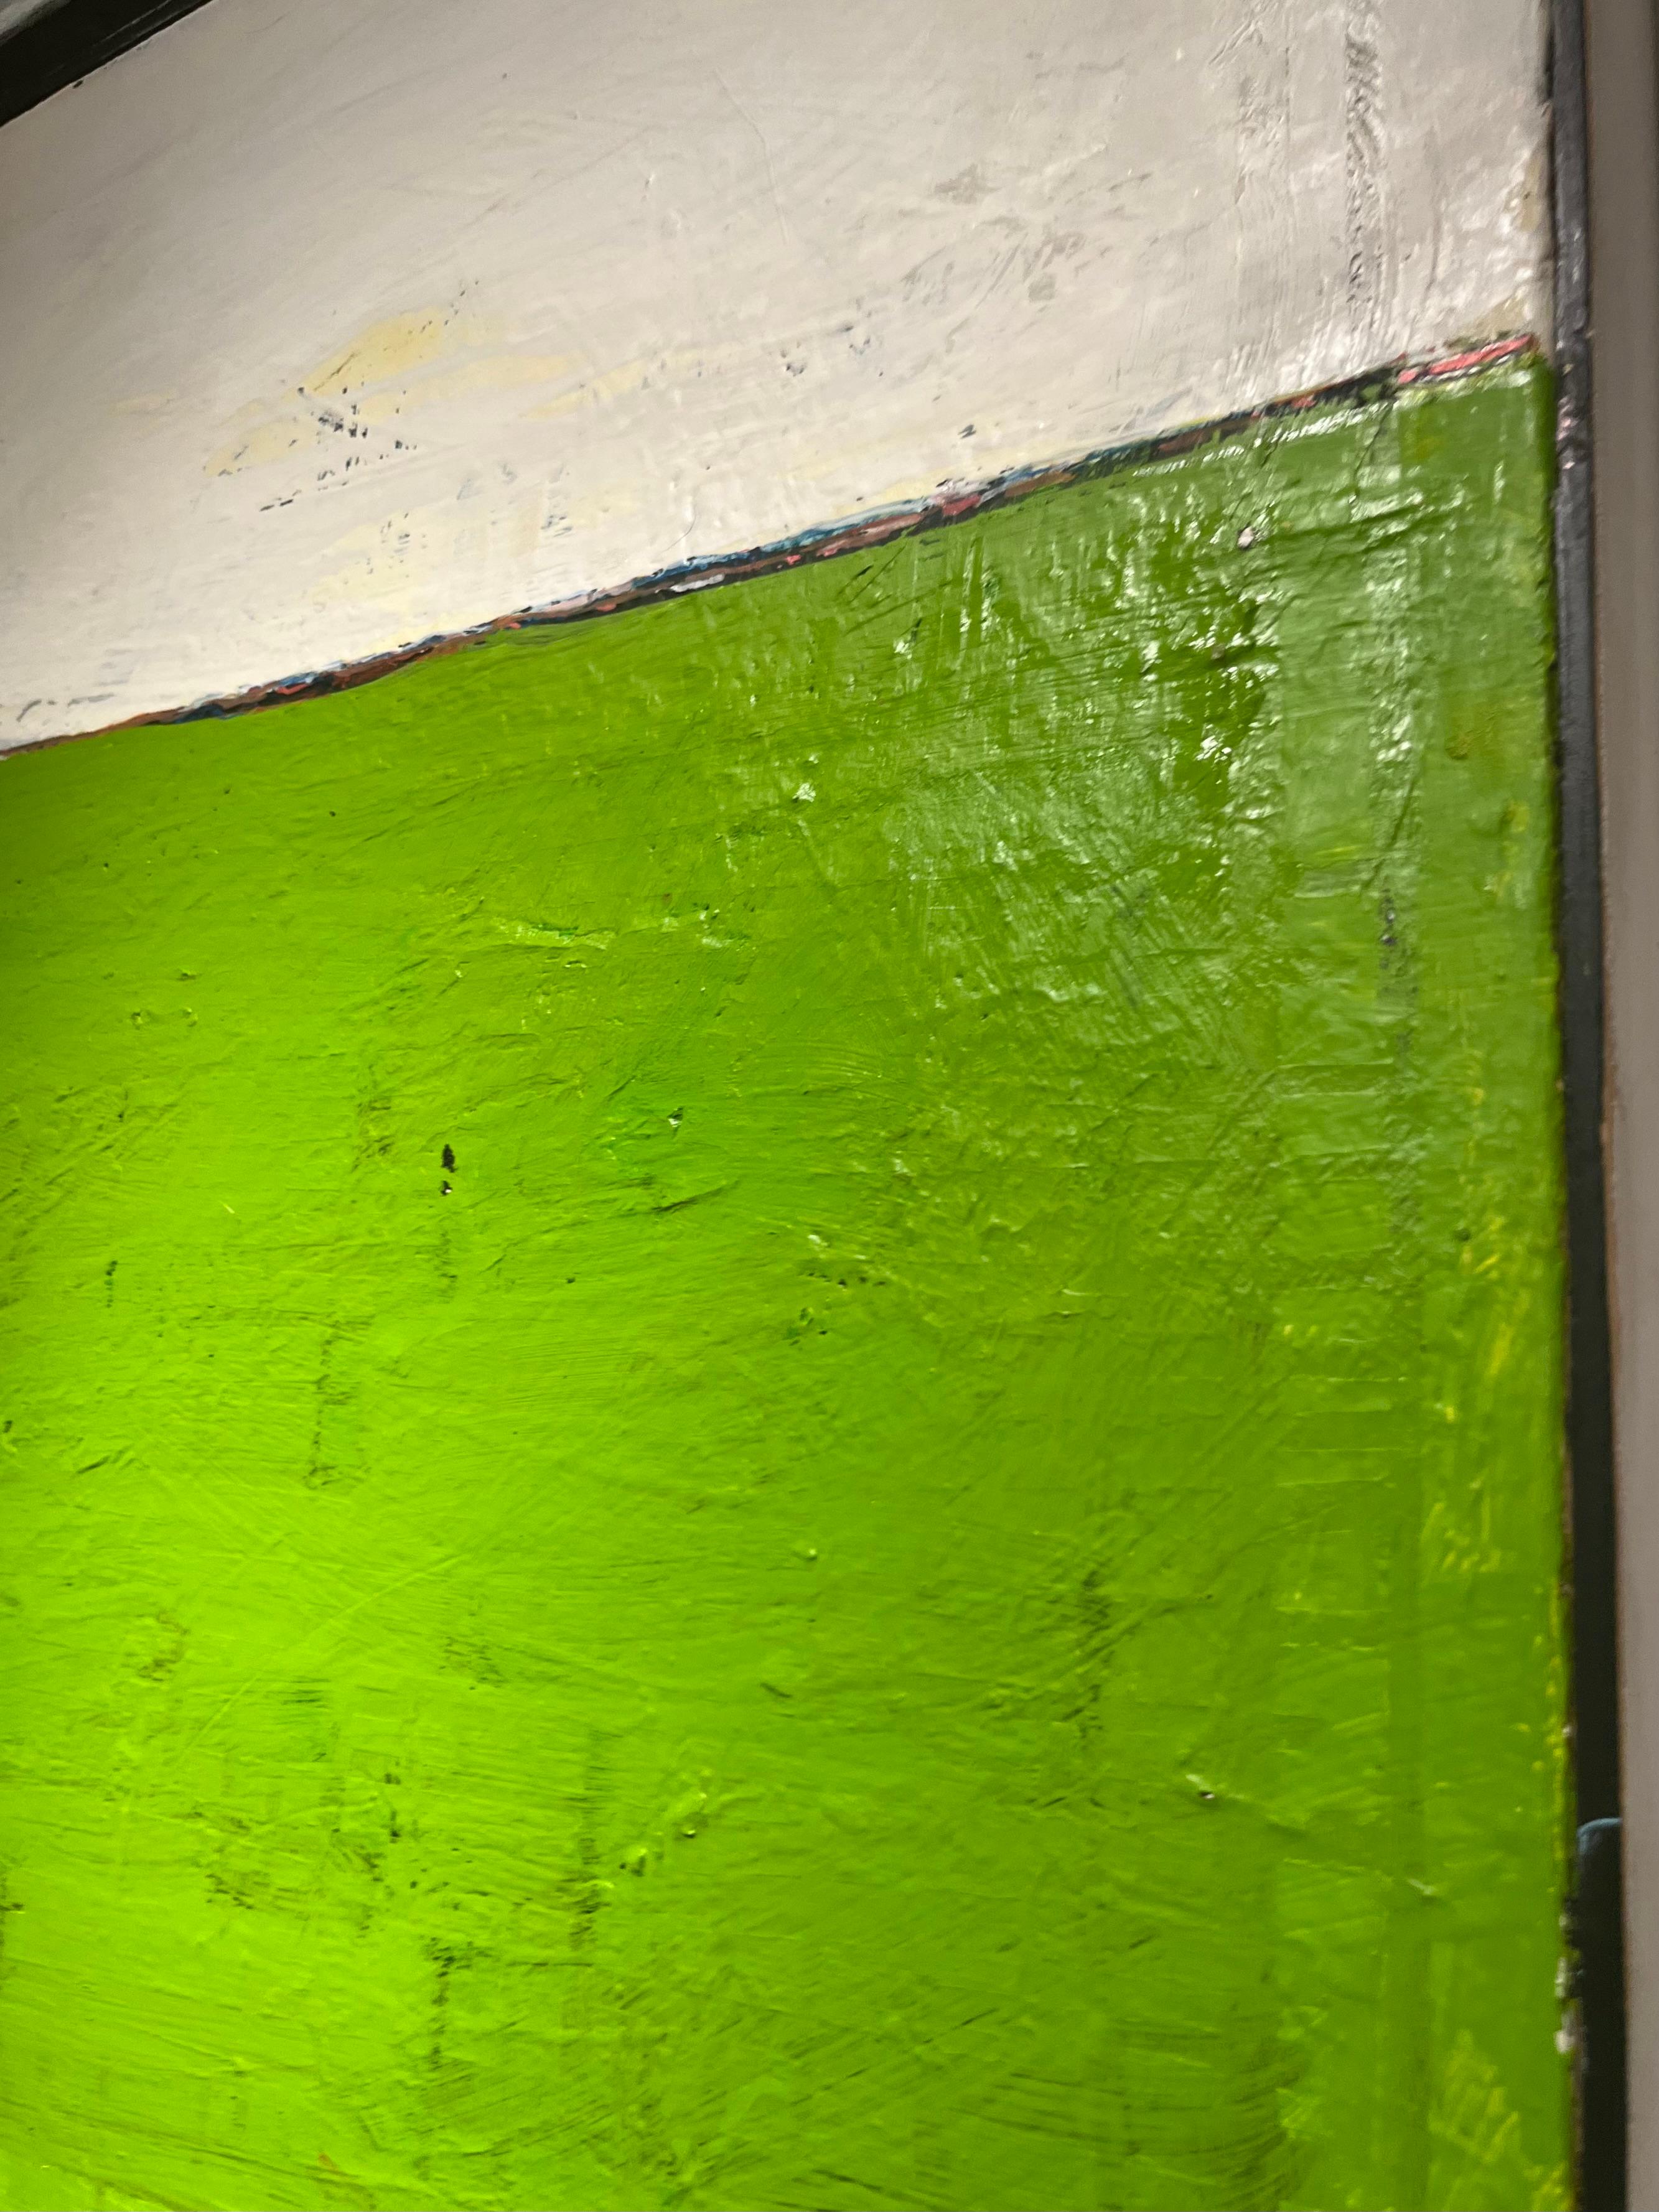 Sans titre, 2000, vert, abstrait, encadré - Painting de Russell Sharon